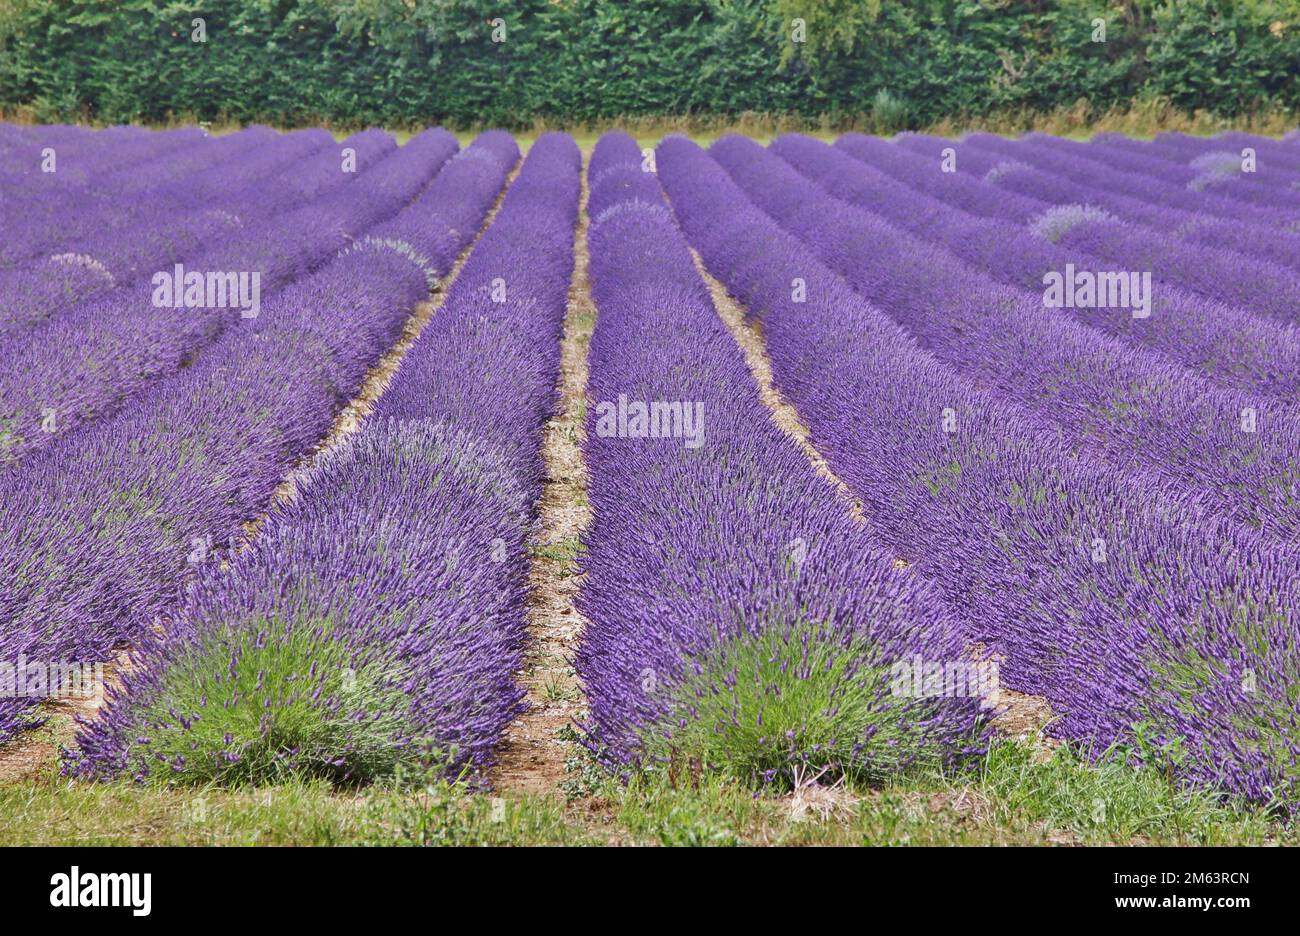 A lavender field near Sevenoaks in Kent, UK Stock Photo